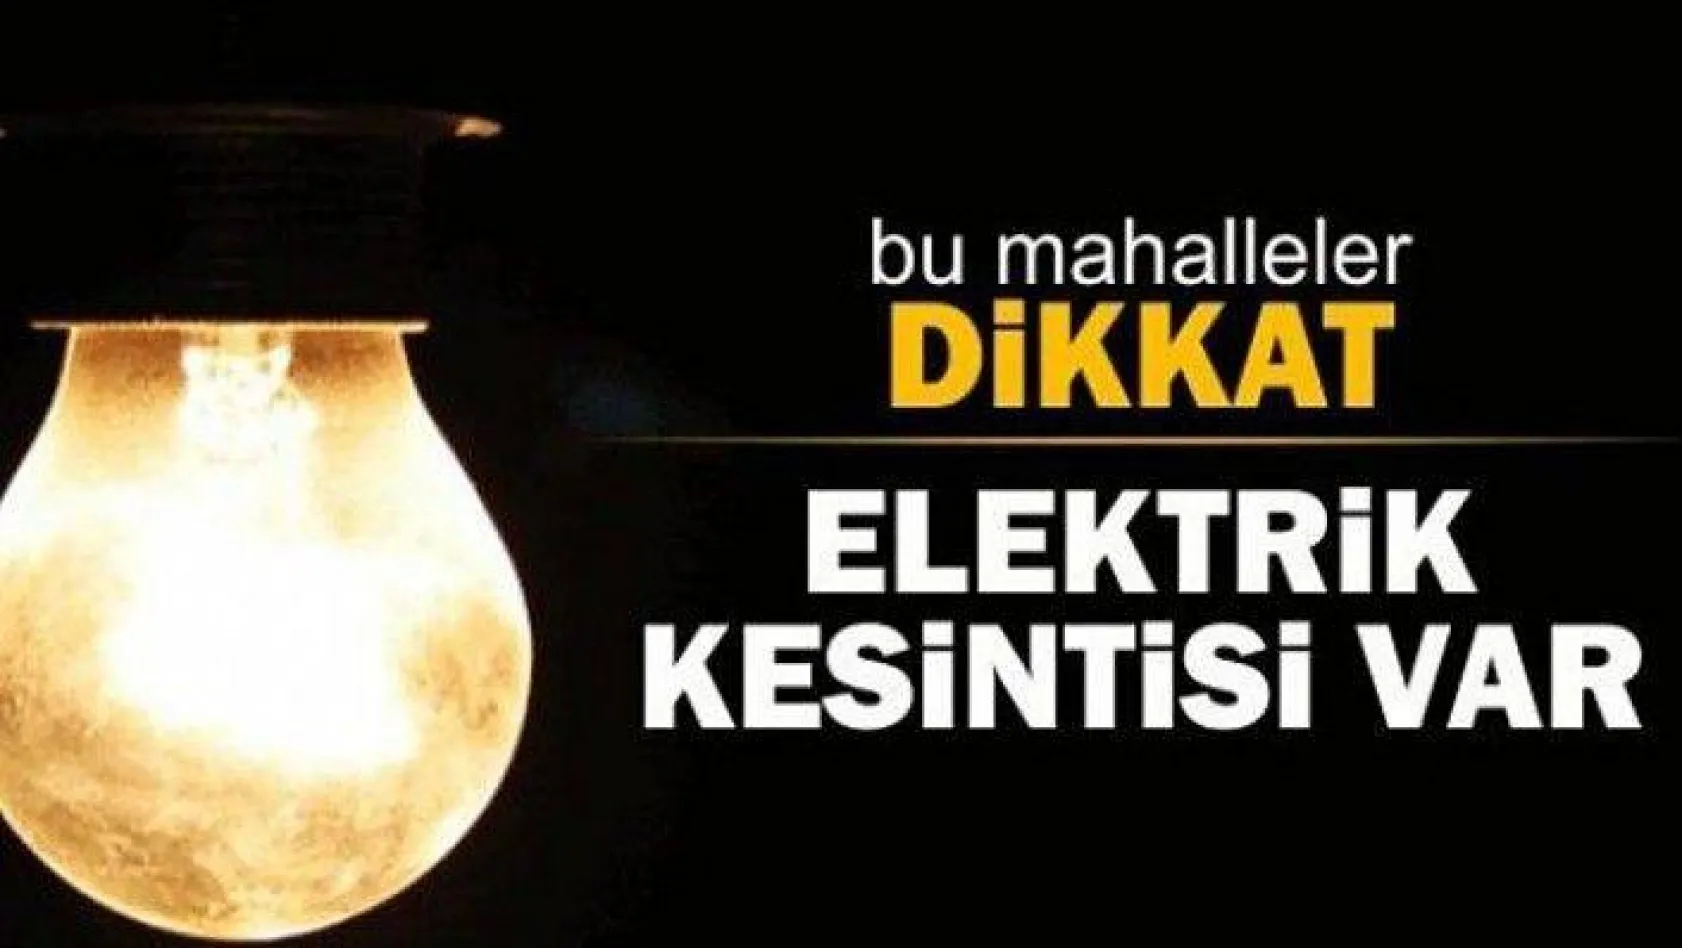 Elektrik kesintisi yapılacak !